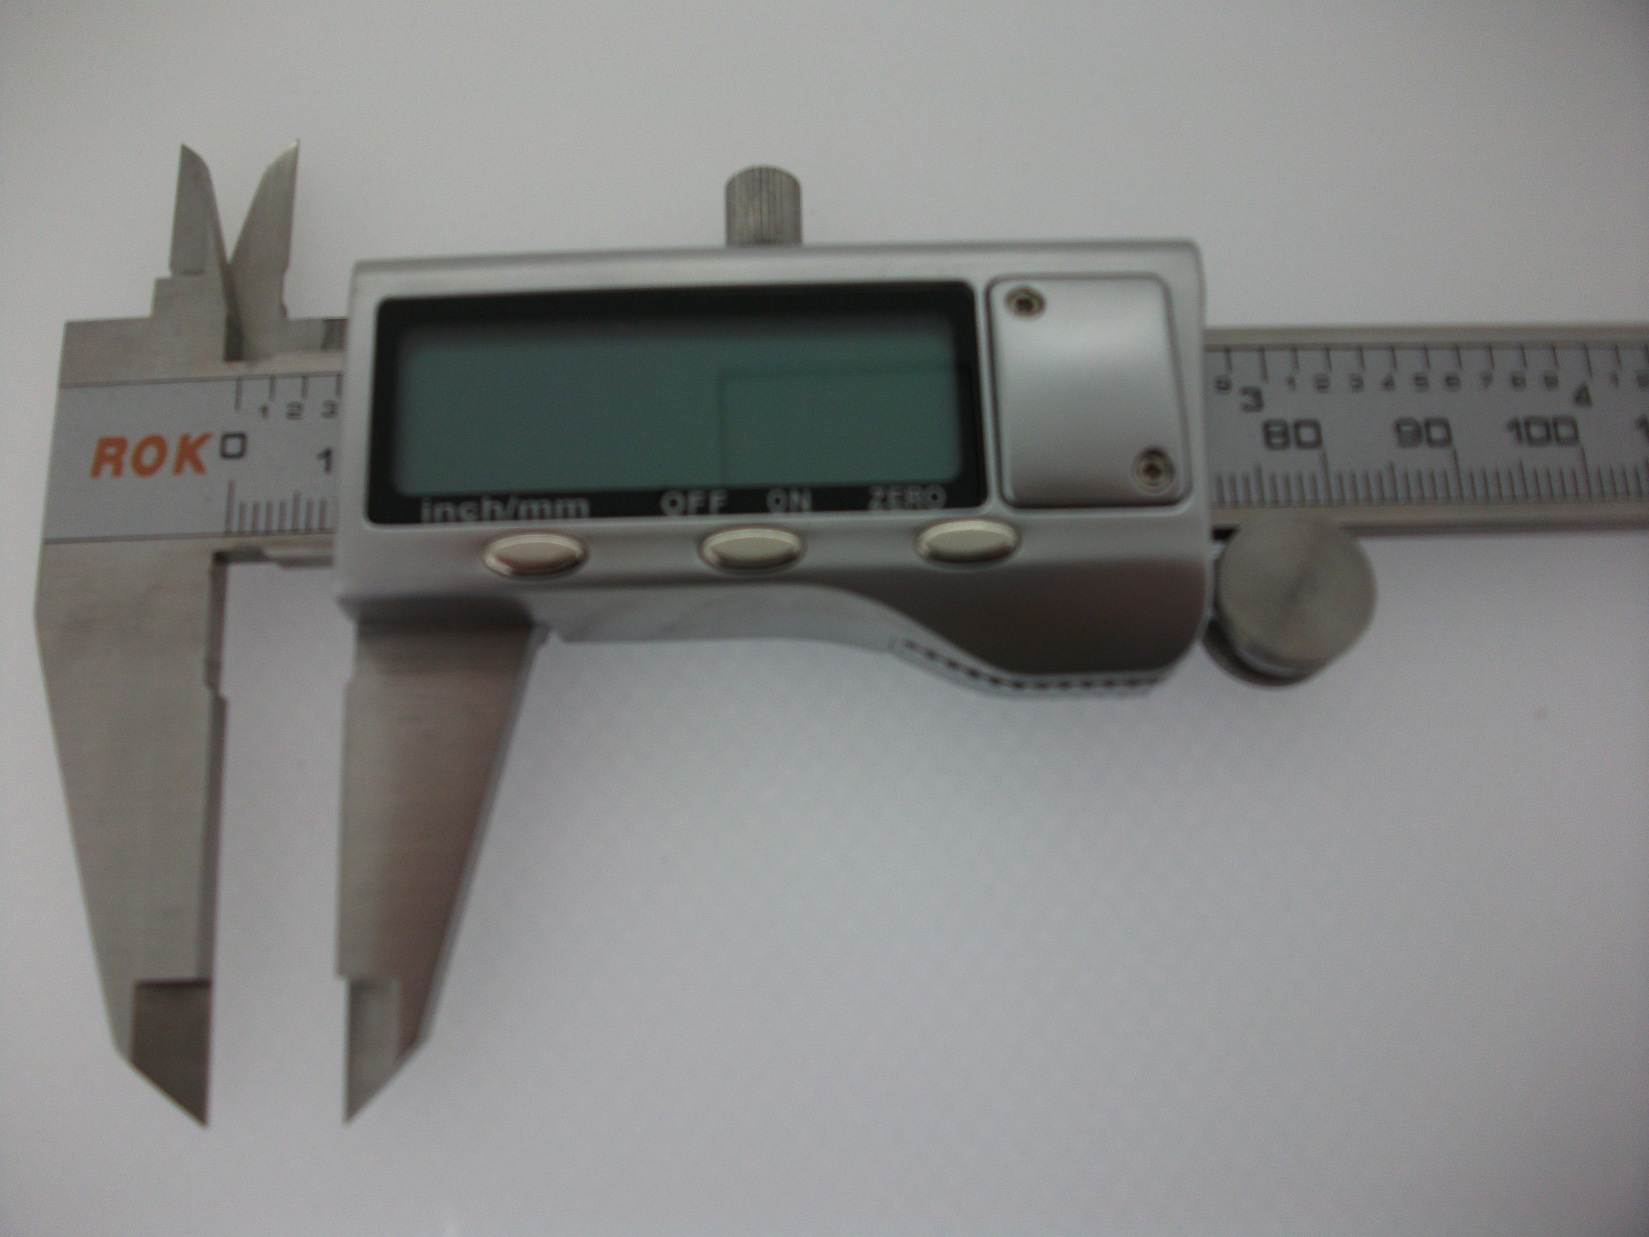 342MA Digital Caliper, China mesuring paquímetro, instrumentos de medição vernier calipers